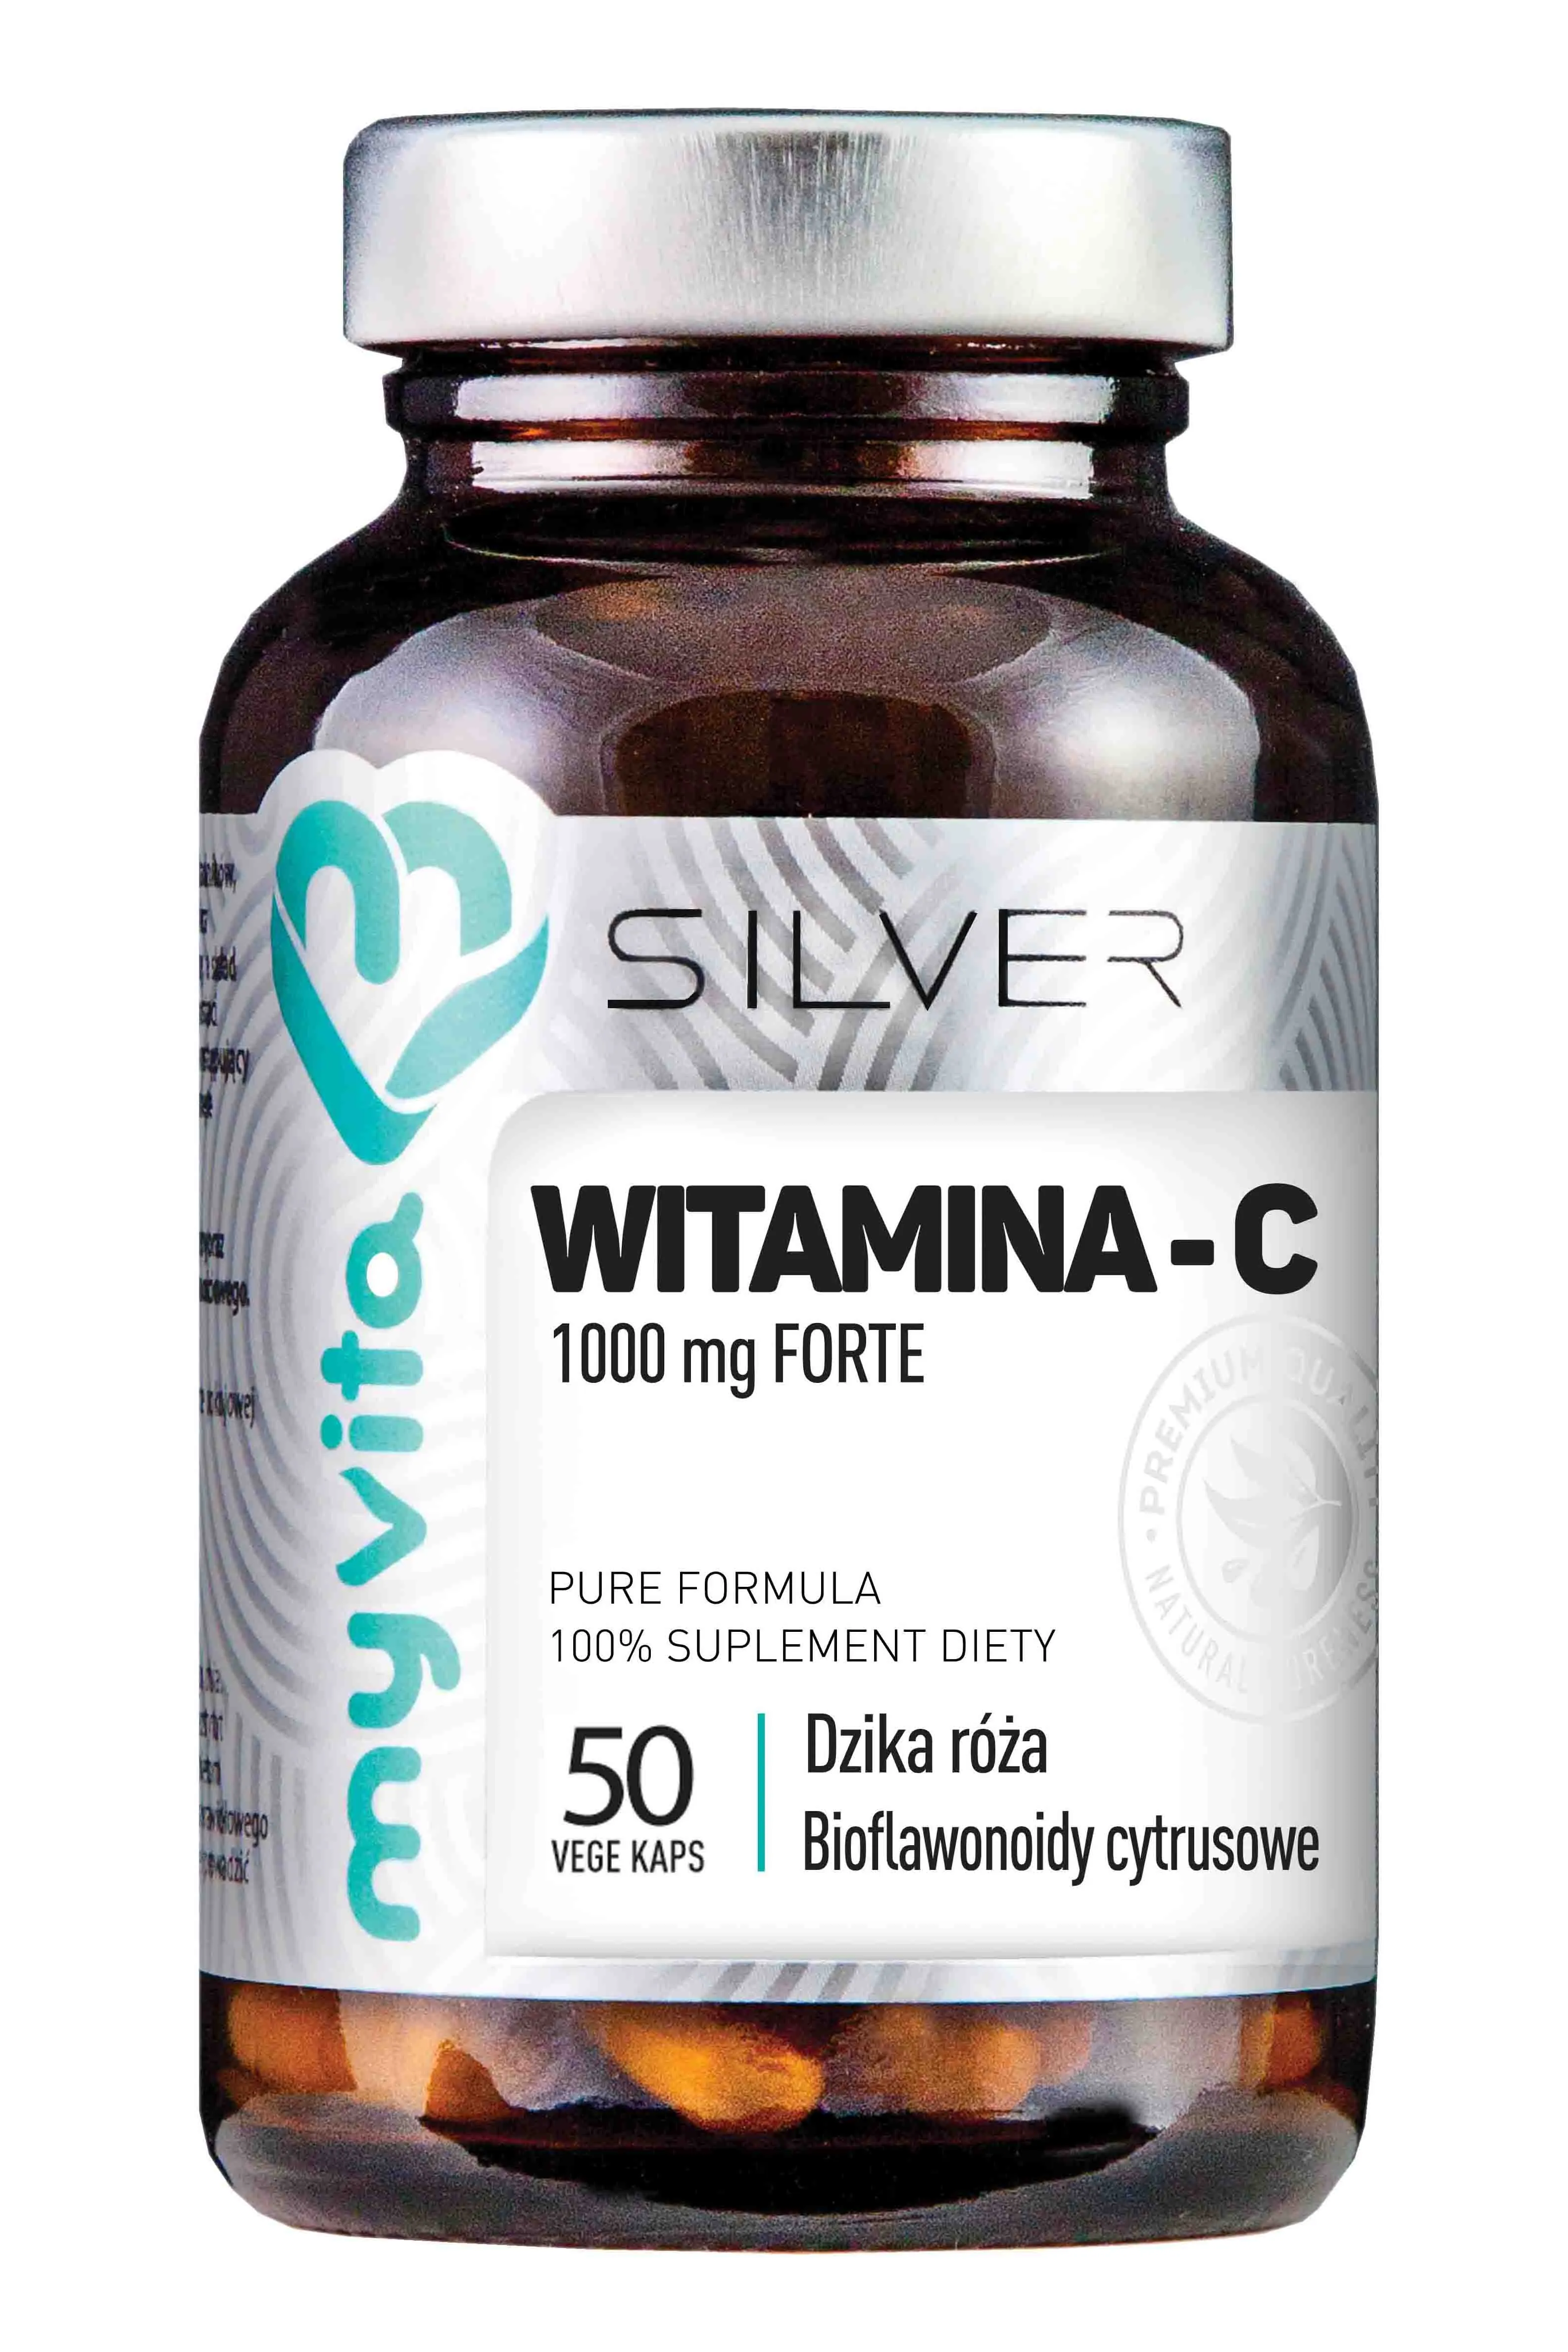 MyVita Silver, Witamina C 1000mg Forte, suplement diety, 50 kapsułek